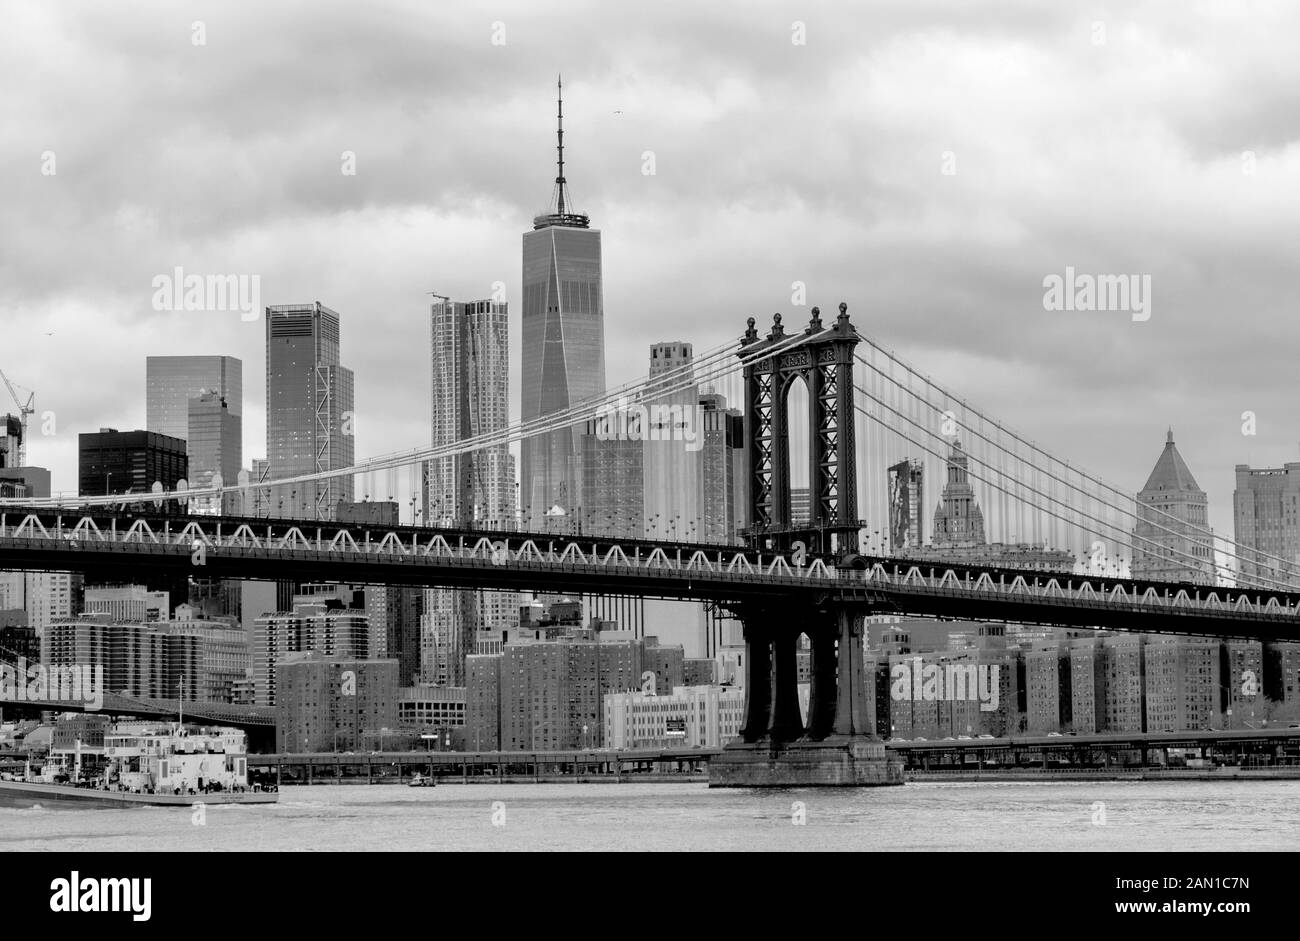 Les superbes gratte-ciel de Lower Manhattan Island et du pont de Manhattan, New York City, États-Unis d'Amérique 2018. Banque D'Images